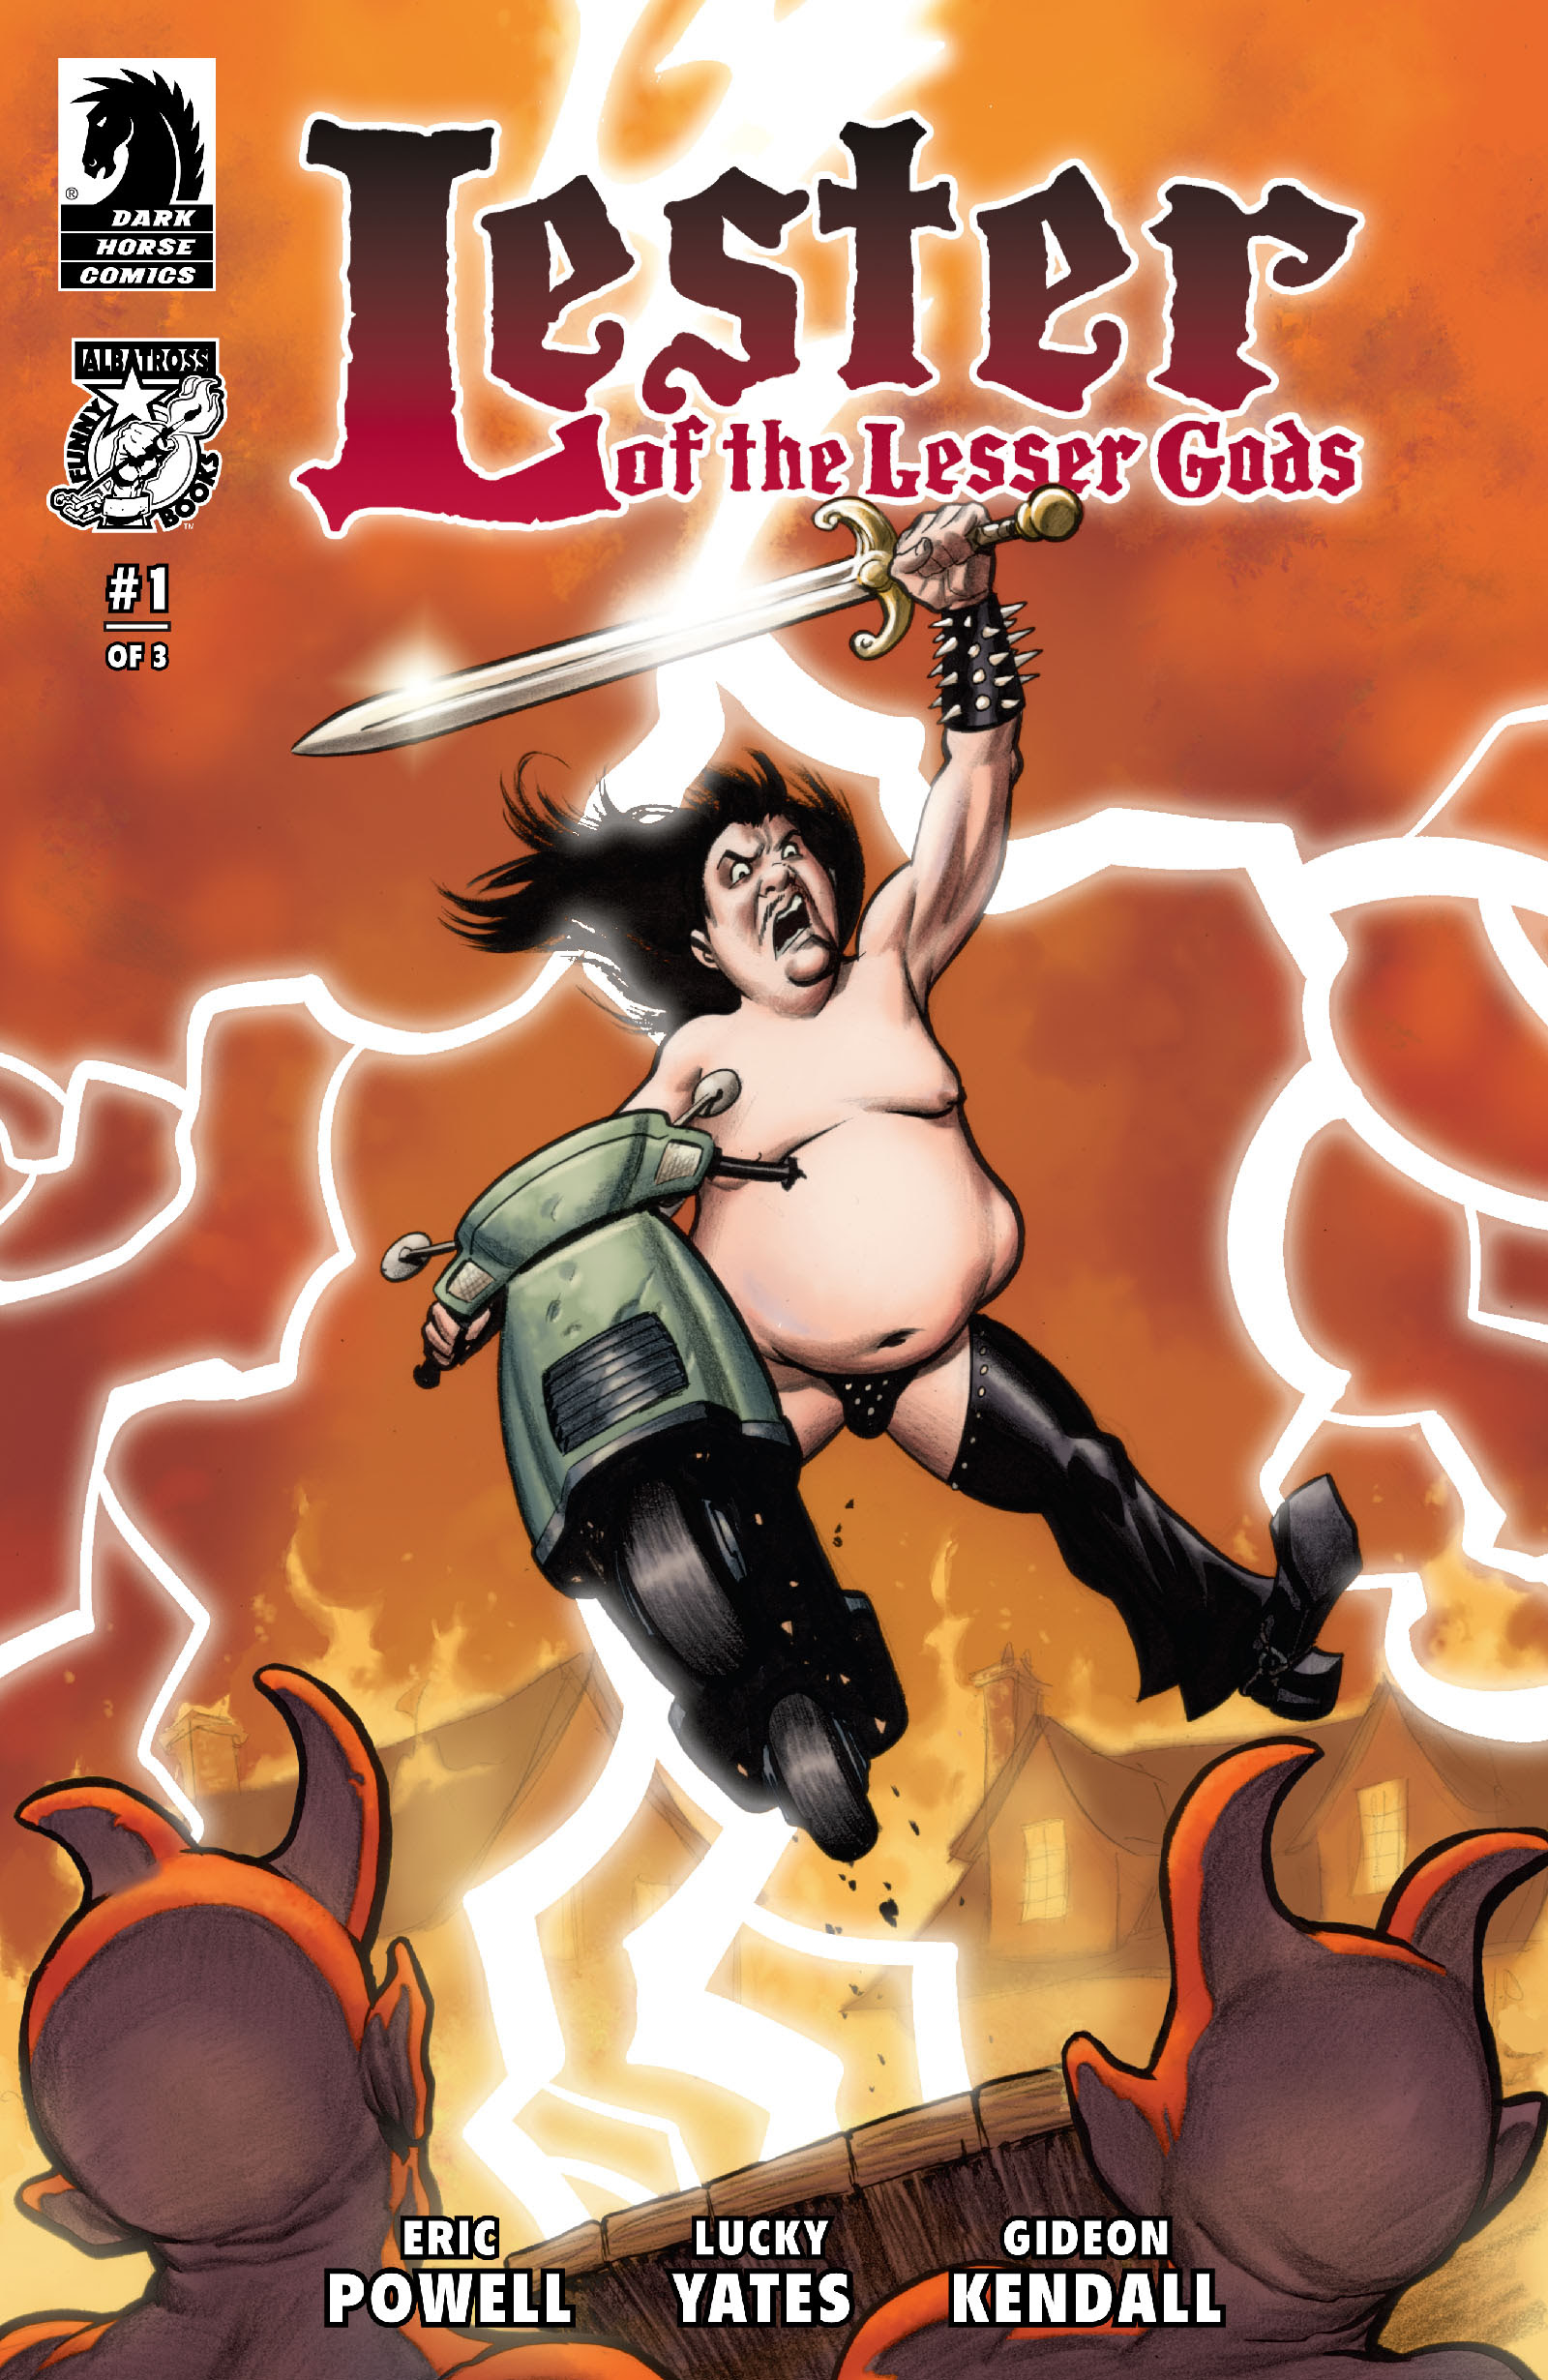 Lester of the Lesser Gods #1 Cover B